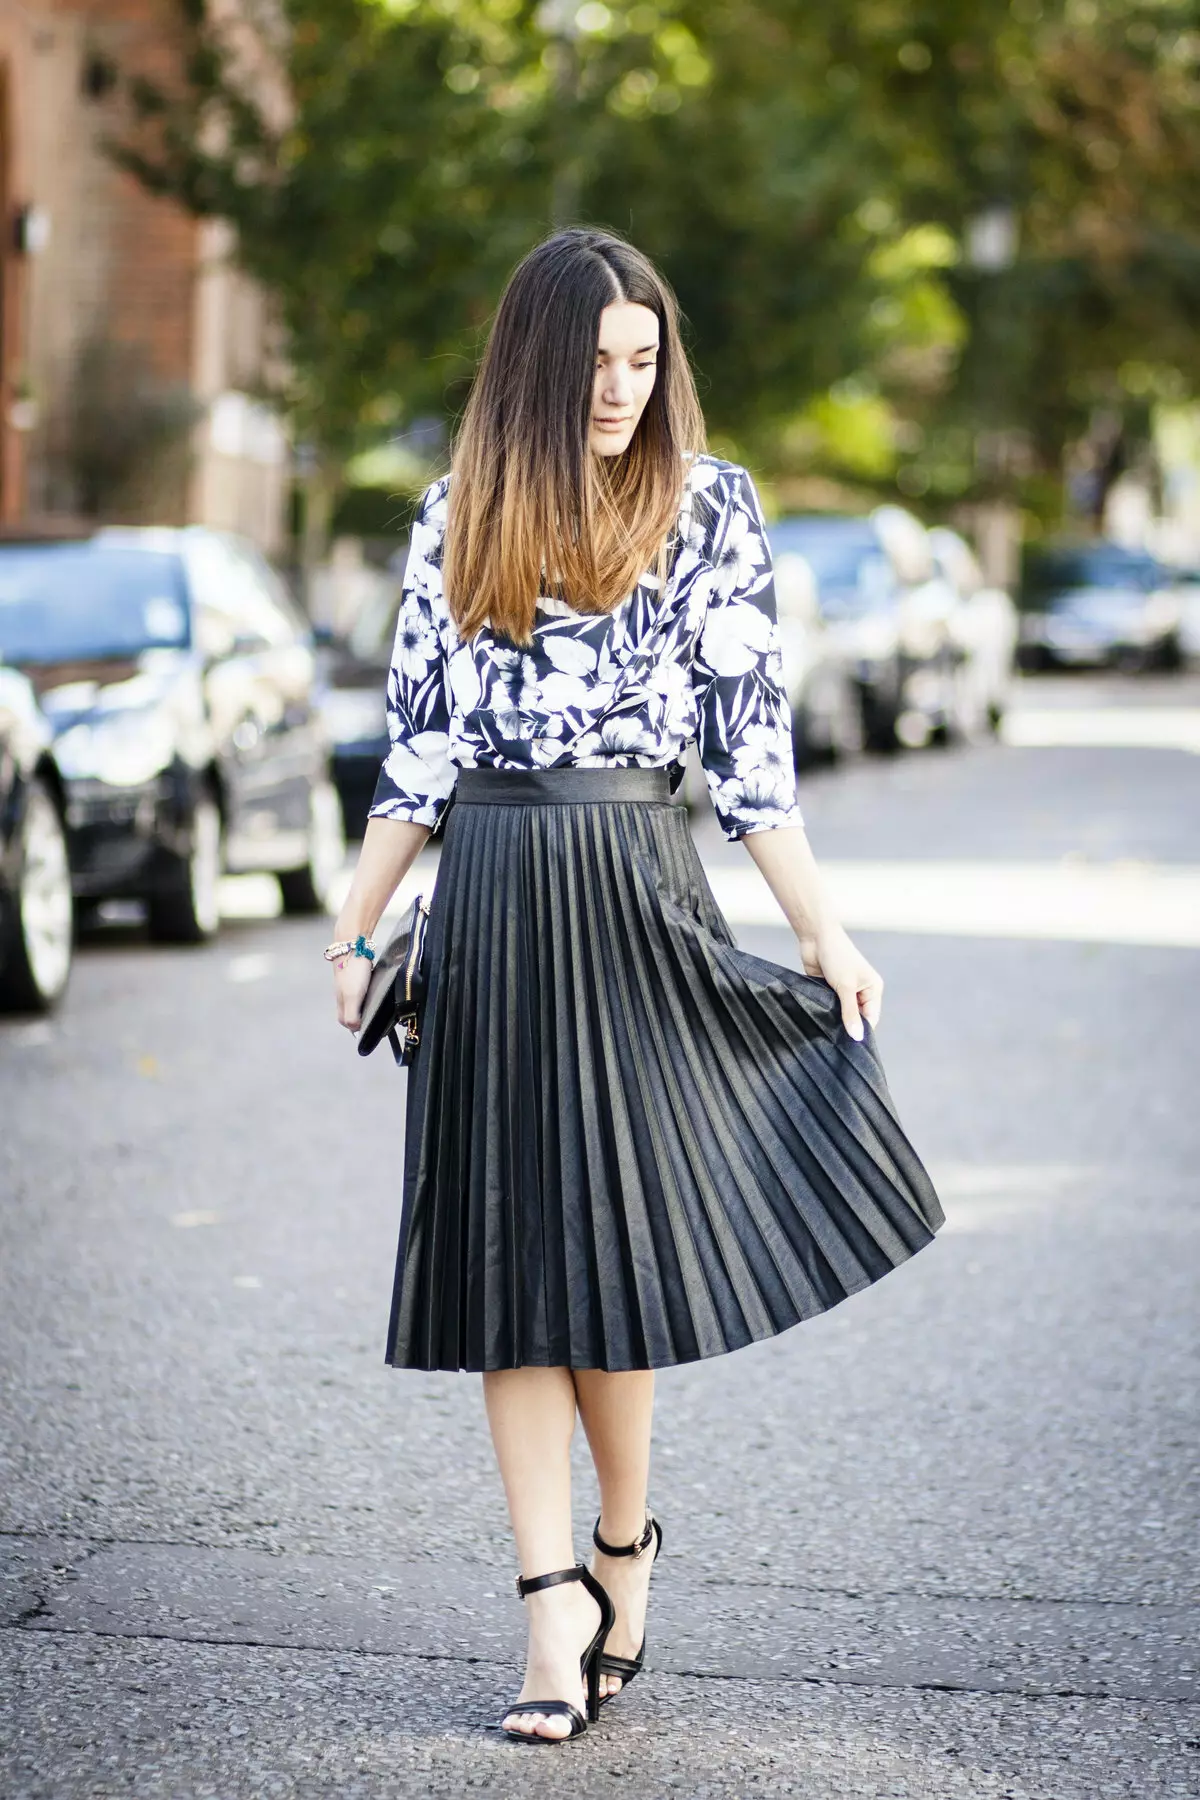 Plays चमड़े के स्कर्ट: Pleated इको-टुकड़ा स्कर्ट पहनने के लिए क्या? काले और भूरे रंग की कृत्रिम त्वचा स्कर्ट वाली छवियां 800_42